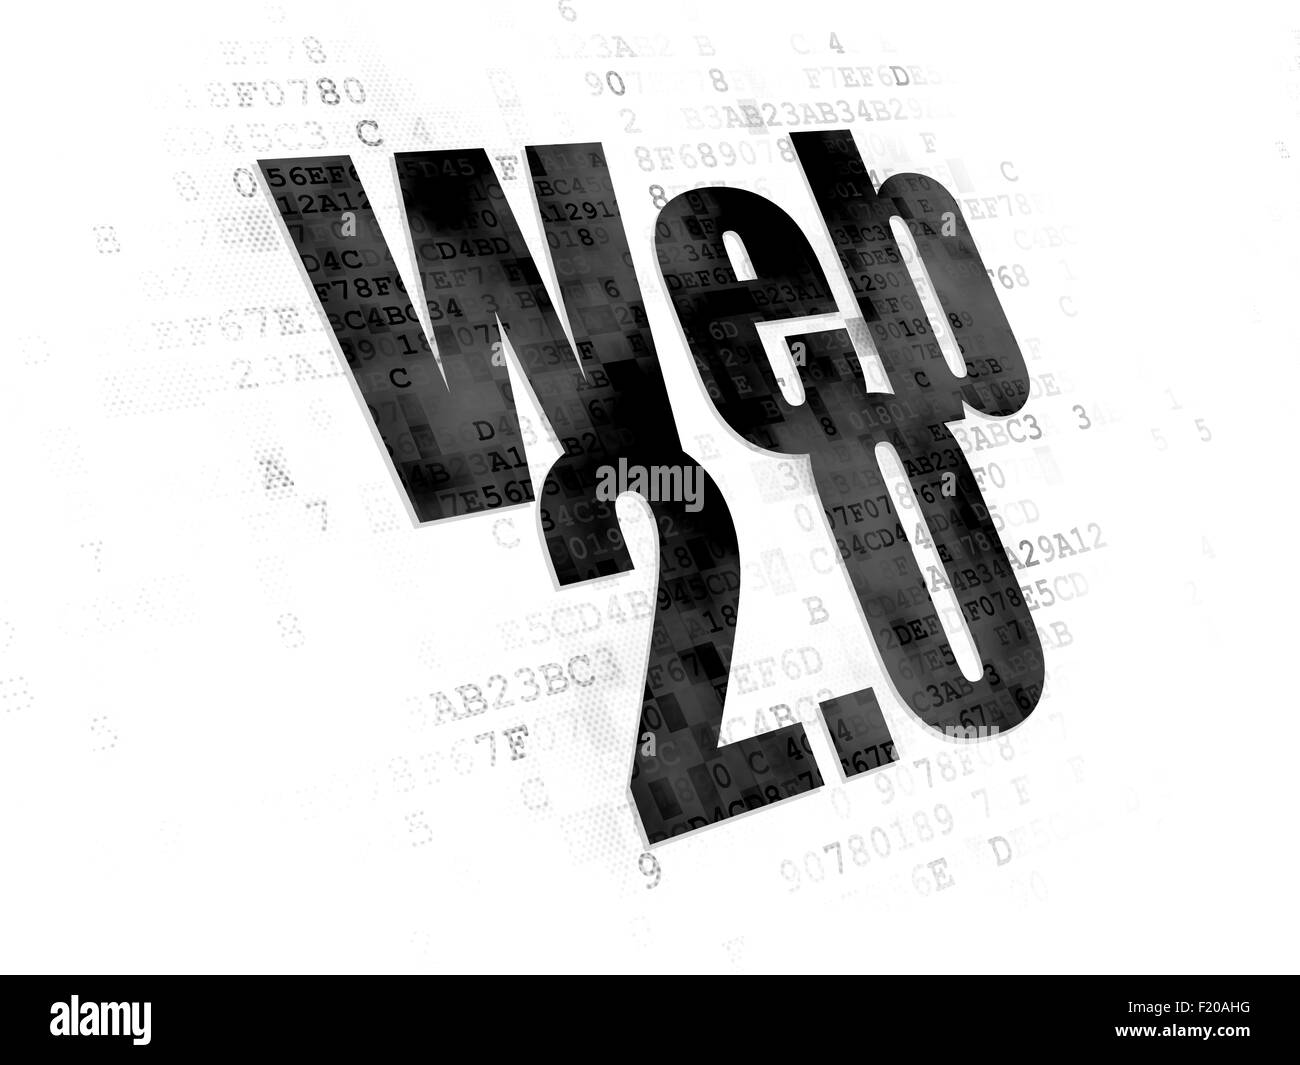 D4c Webapps